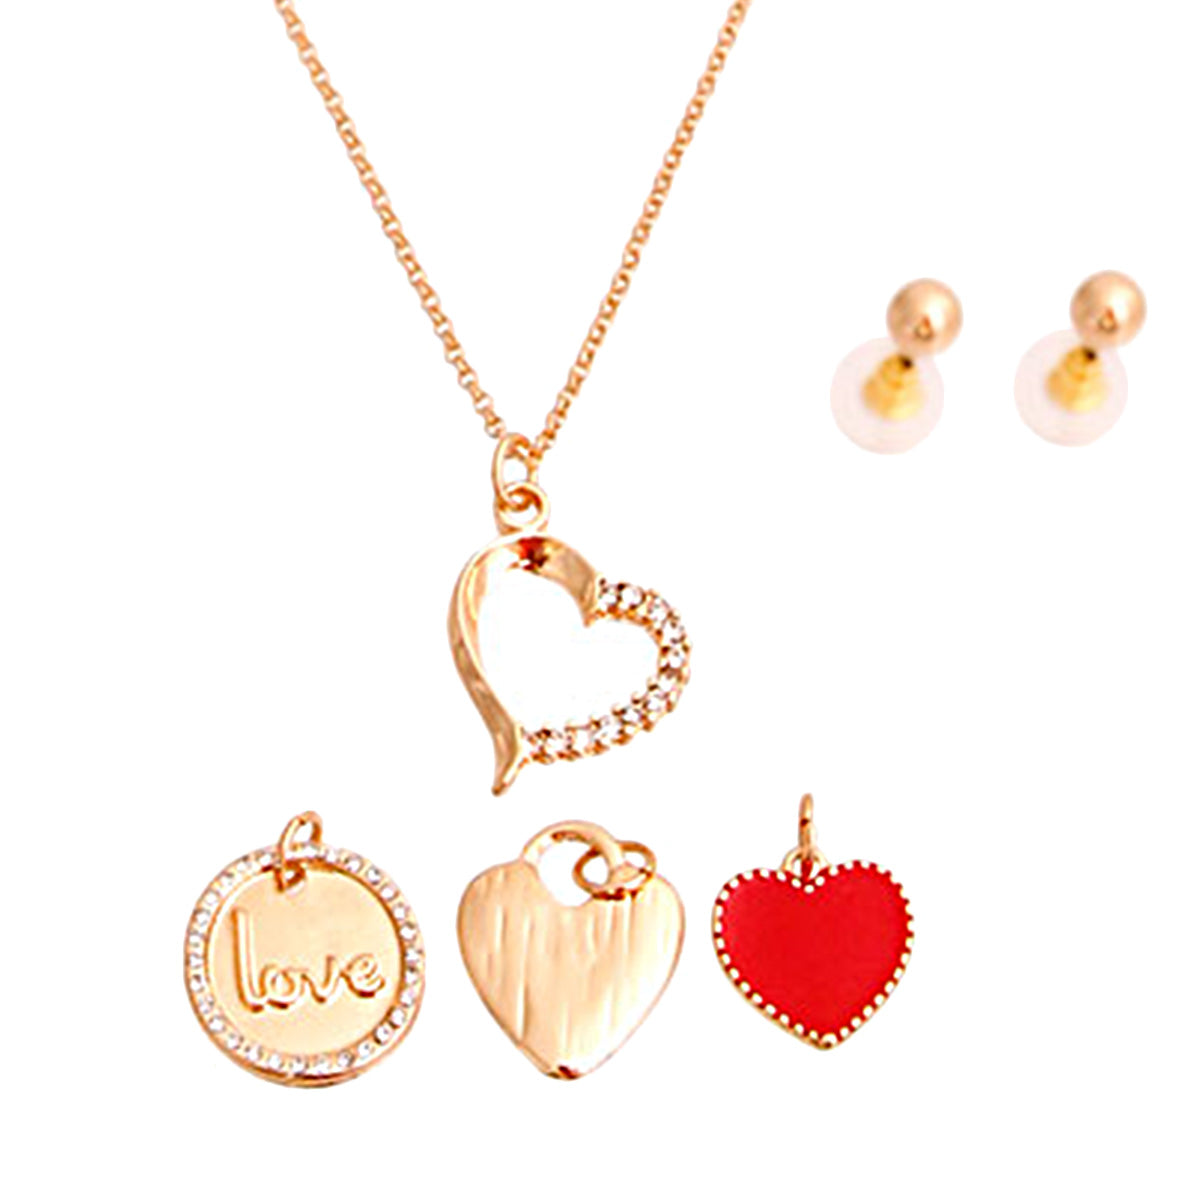 Gold Interchangable Heart Charm Necklace